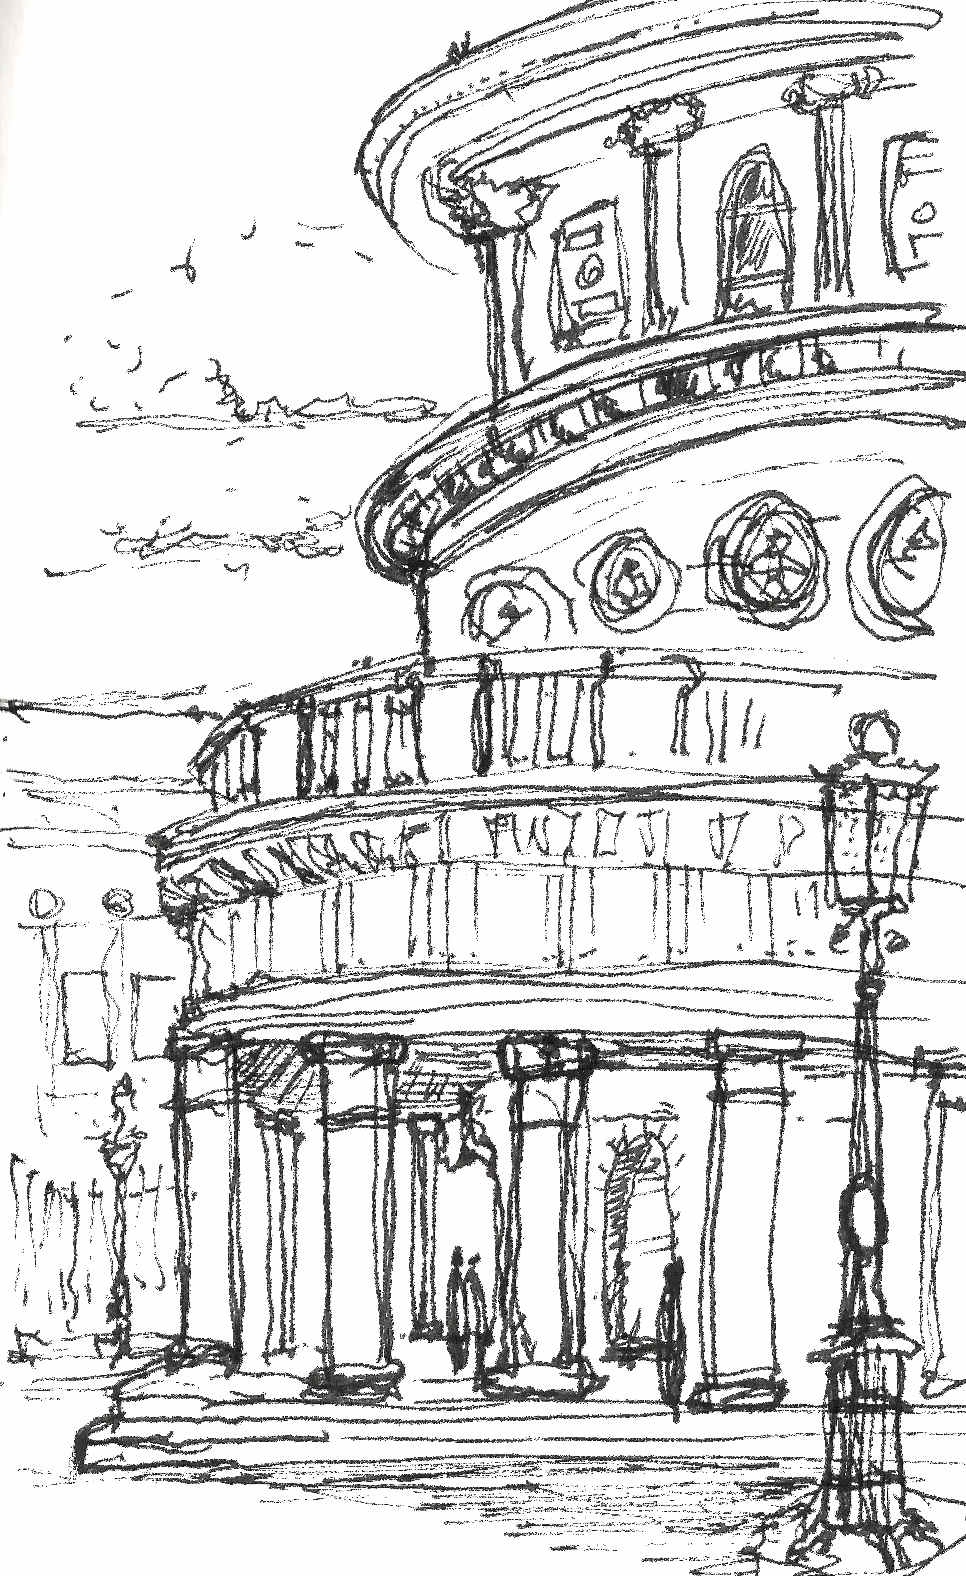 Circular Entrance Sketch